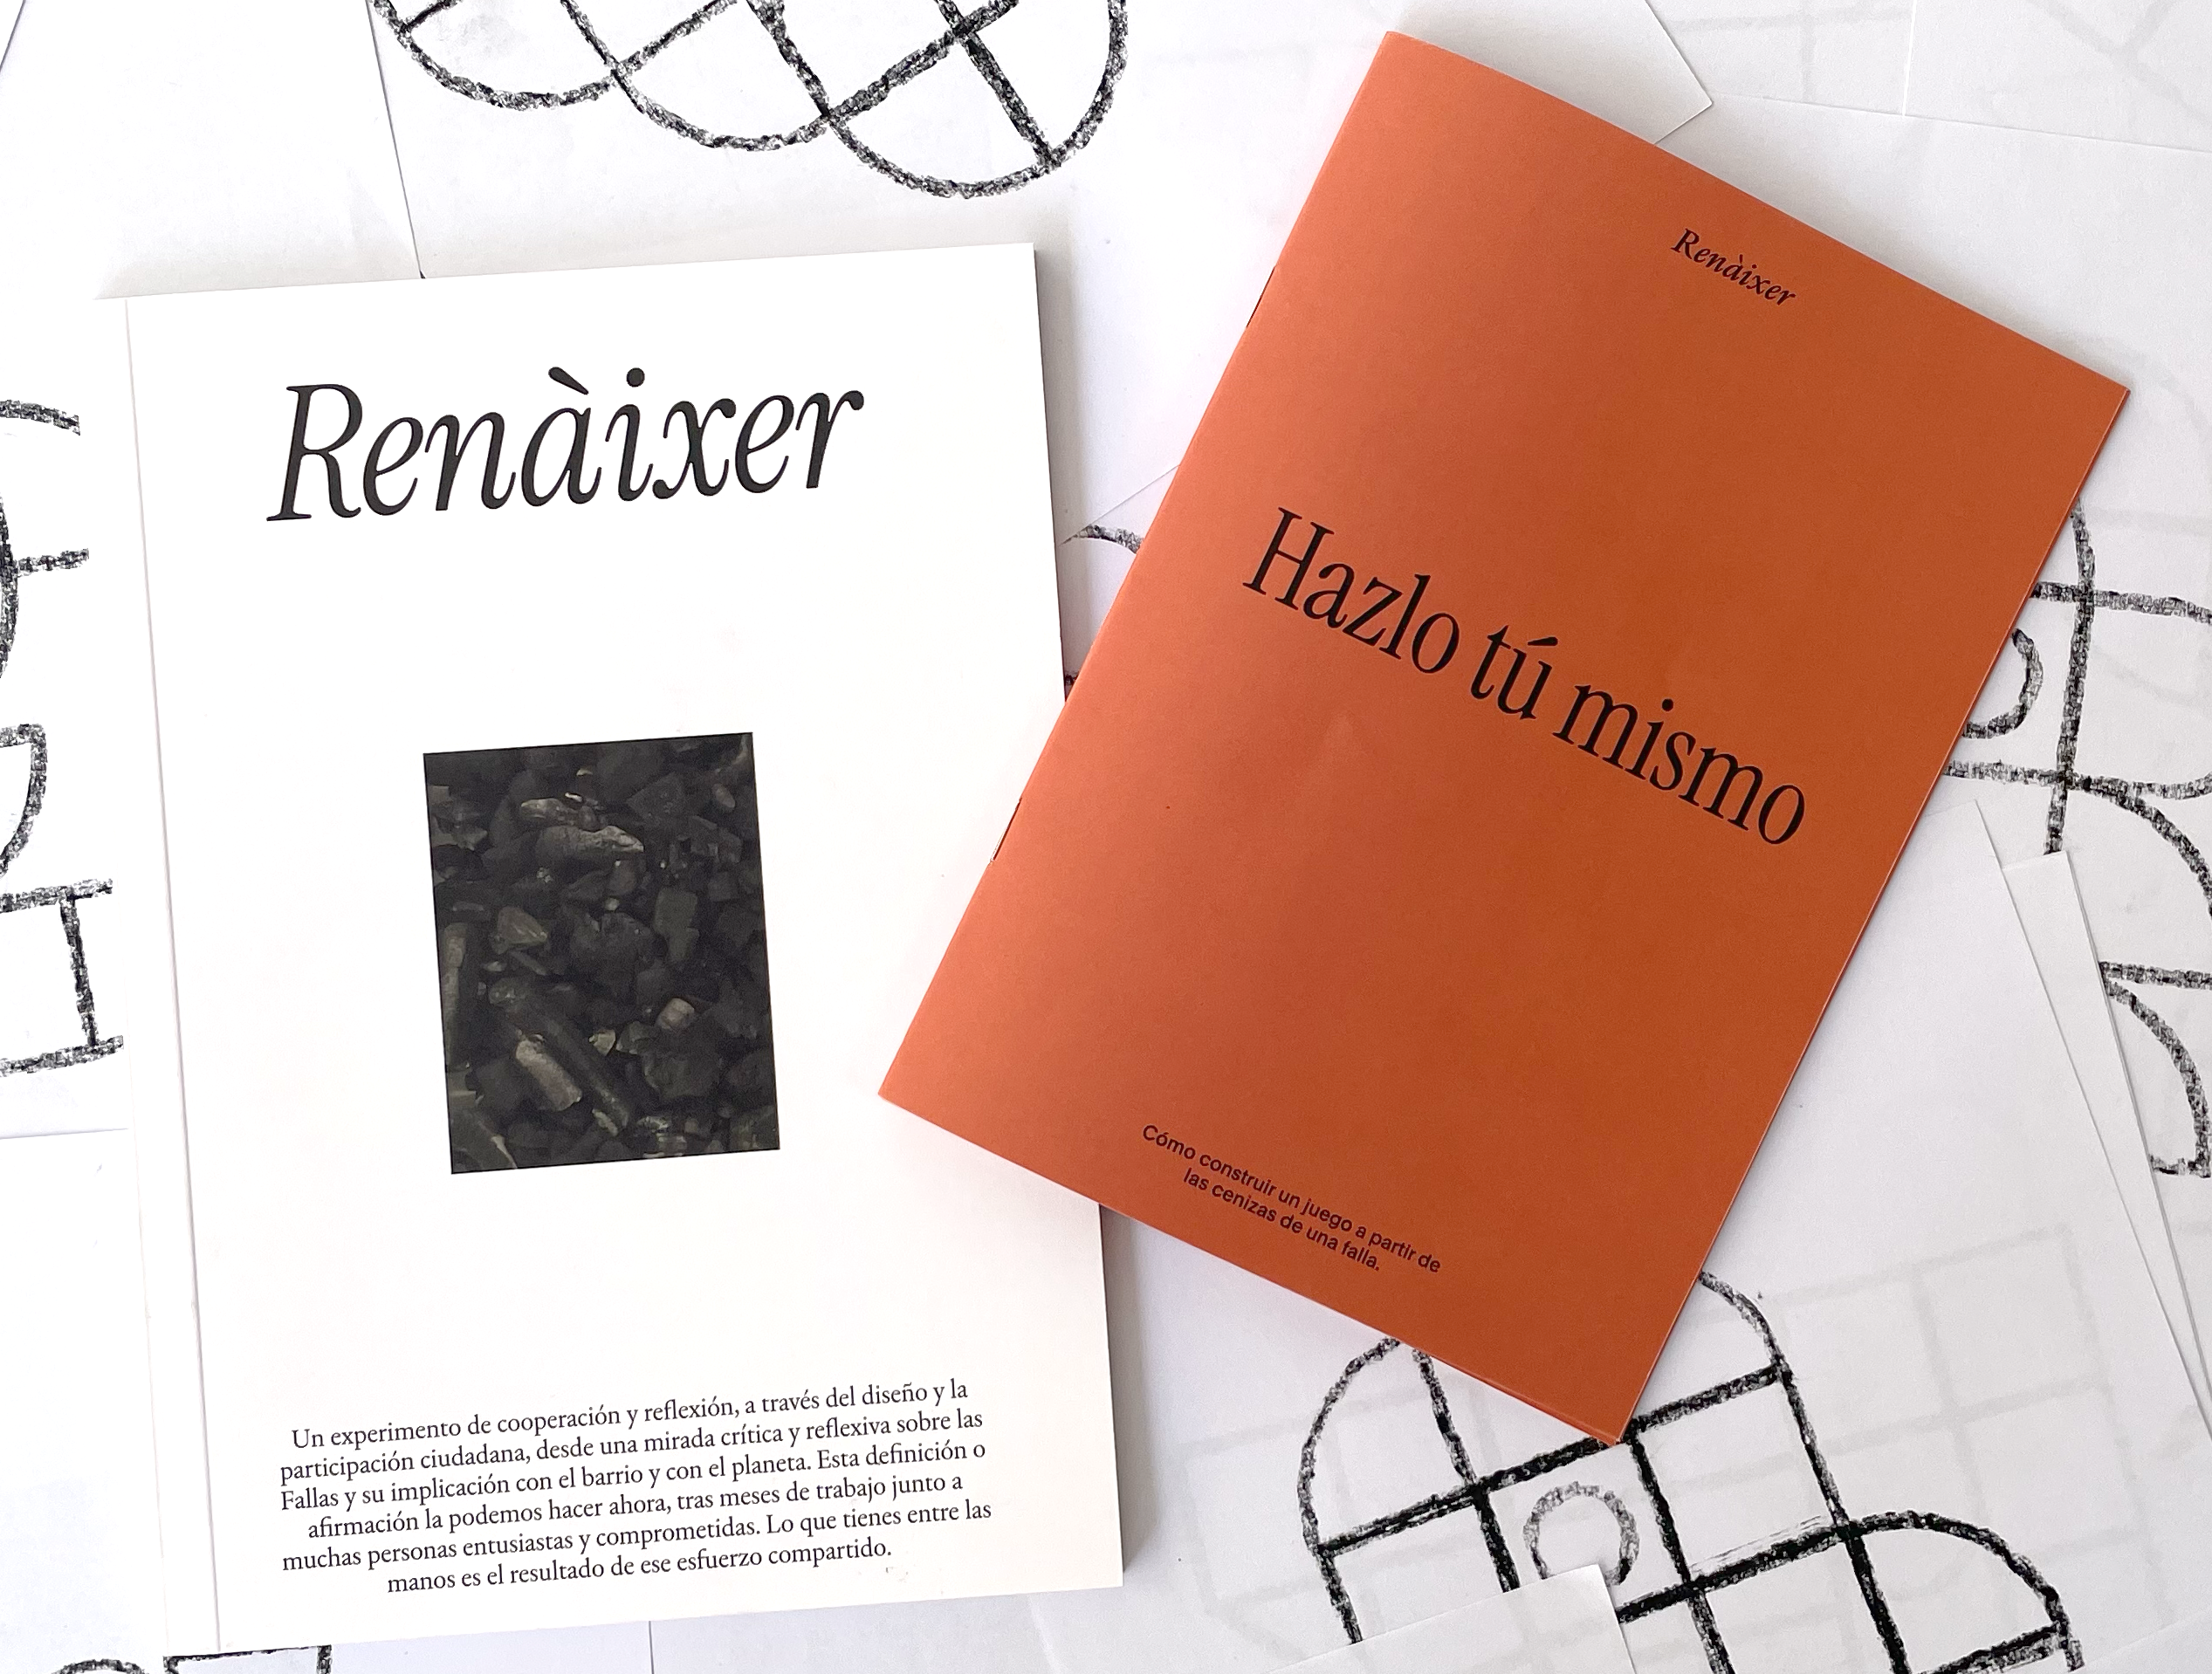 Trampolín publica ‘Renàixer’, un libro sobre diseño, reflexión y Fallas